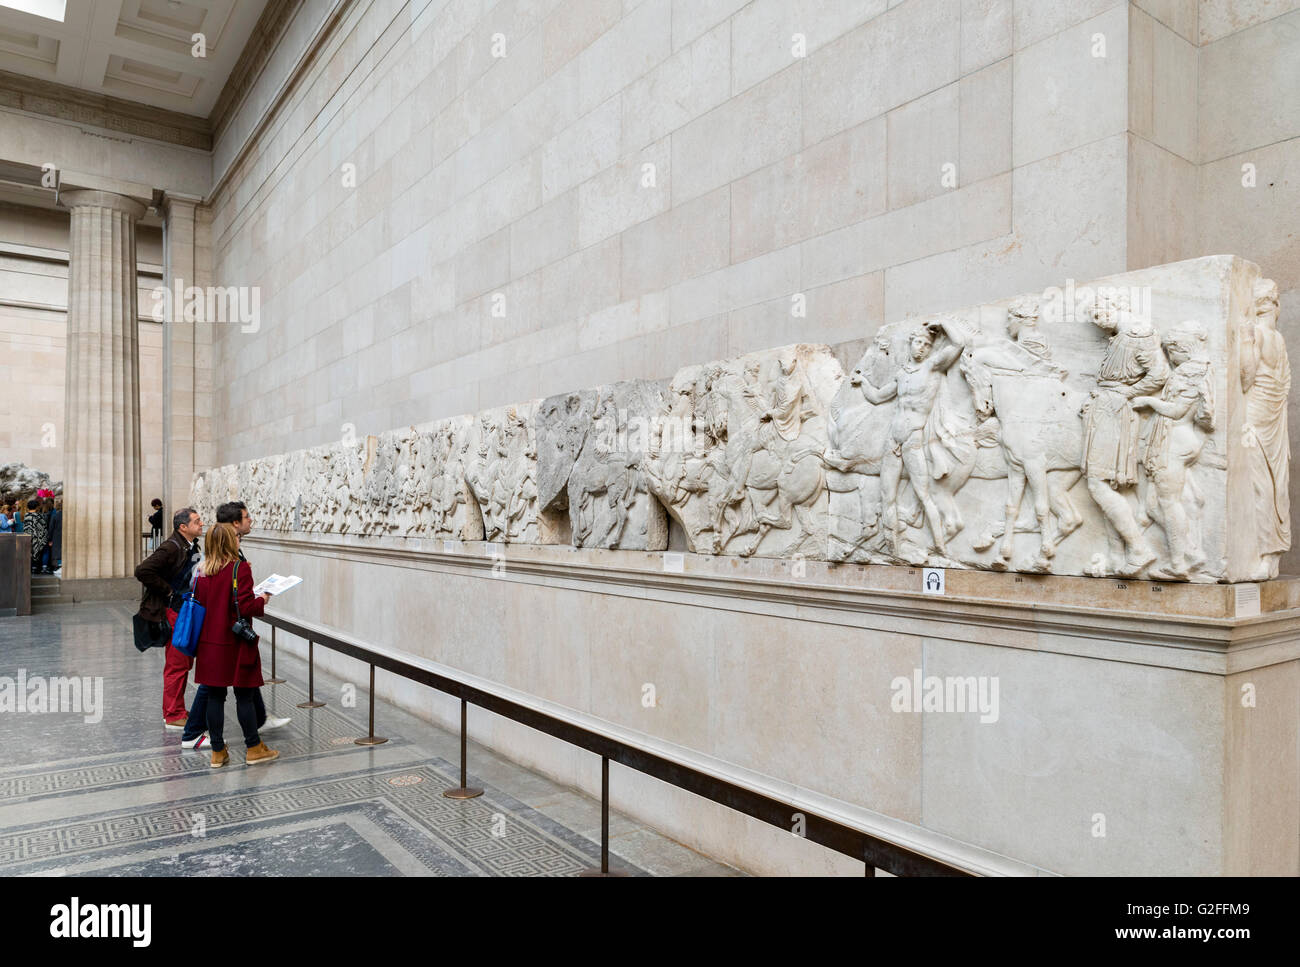 Besucher betrachten, die Parthenon-Skulpturen oder "Elgin Marbles", antiken Griechenland und Rom Galerien, British Museum, Bloomsbury, London, England, UK Stockfoto